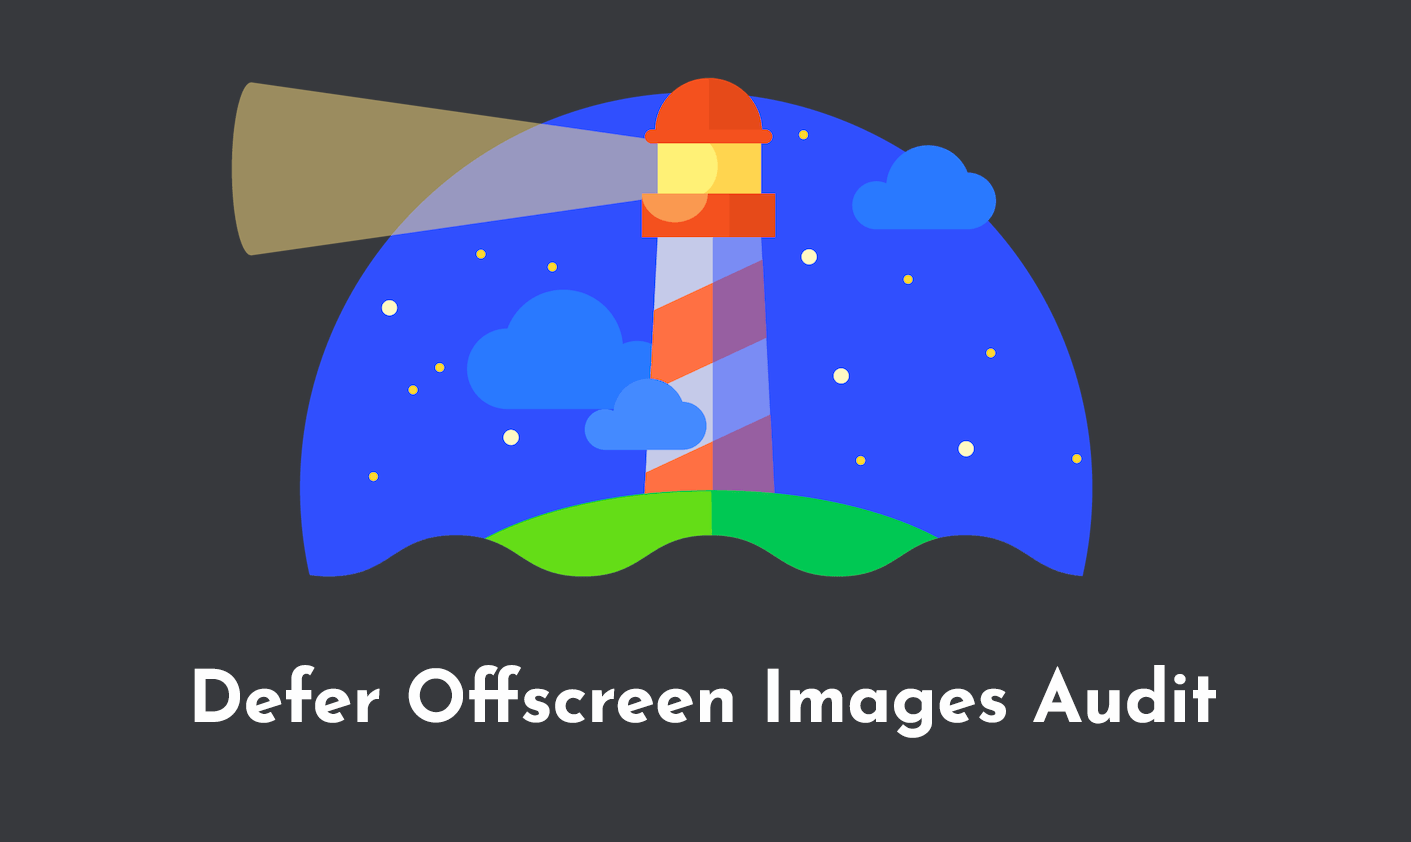 Defer Offscreen Images